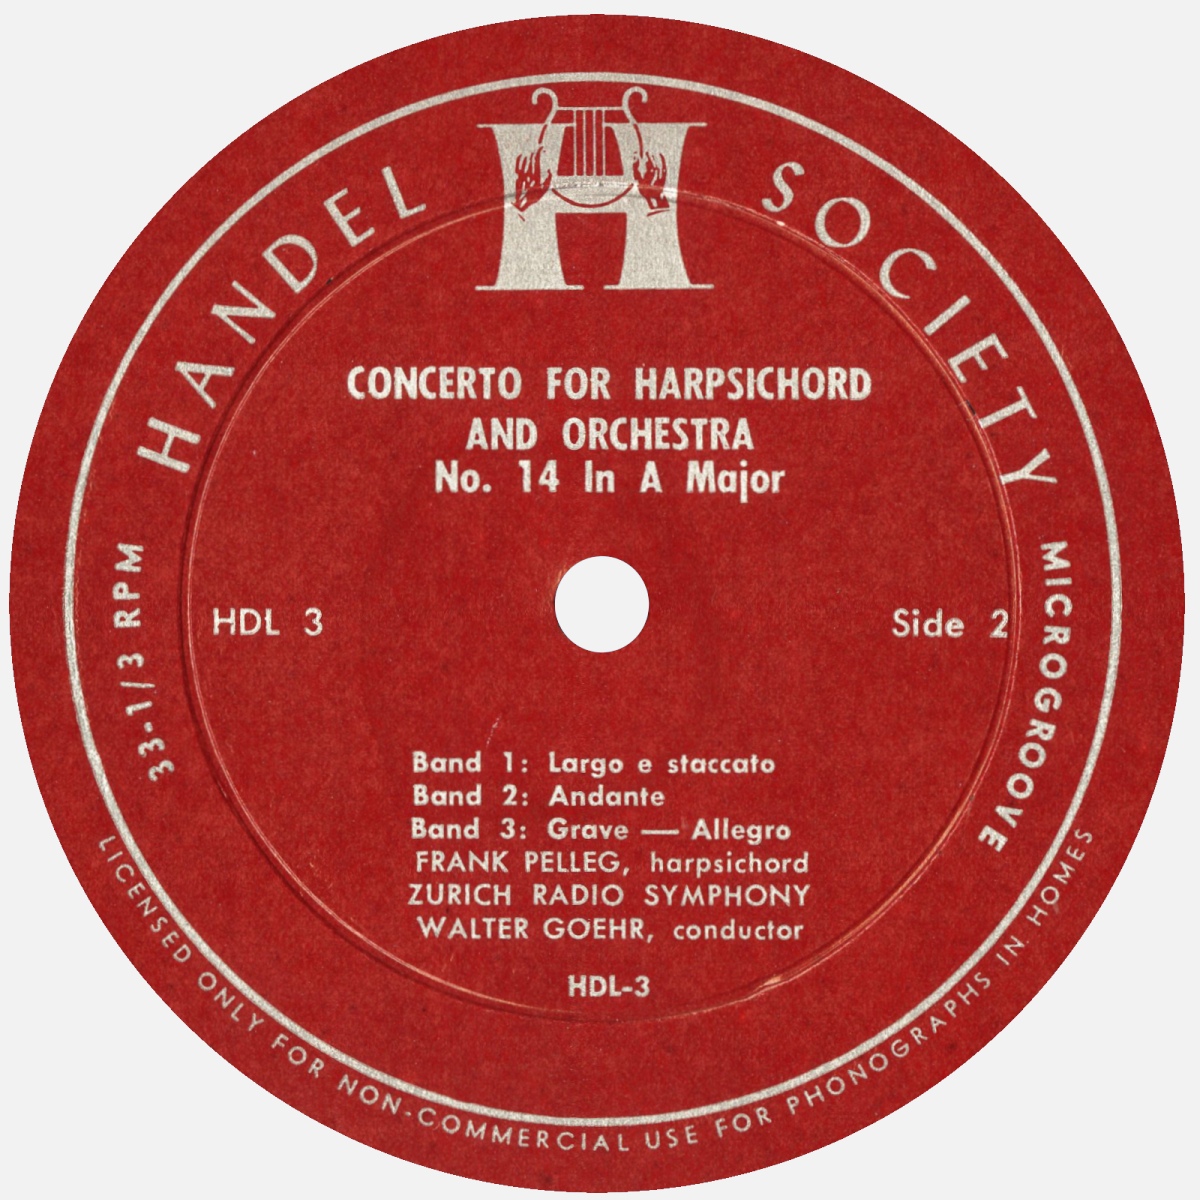 Étiquette verso du disque Handel Society HDL 3